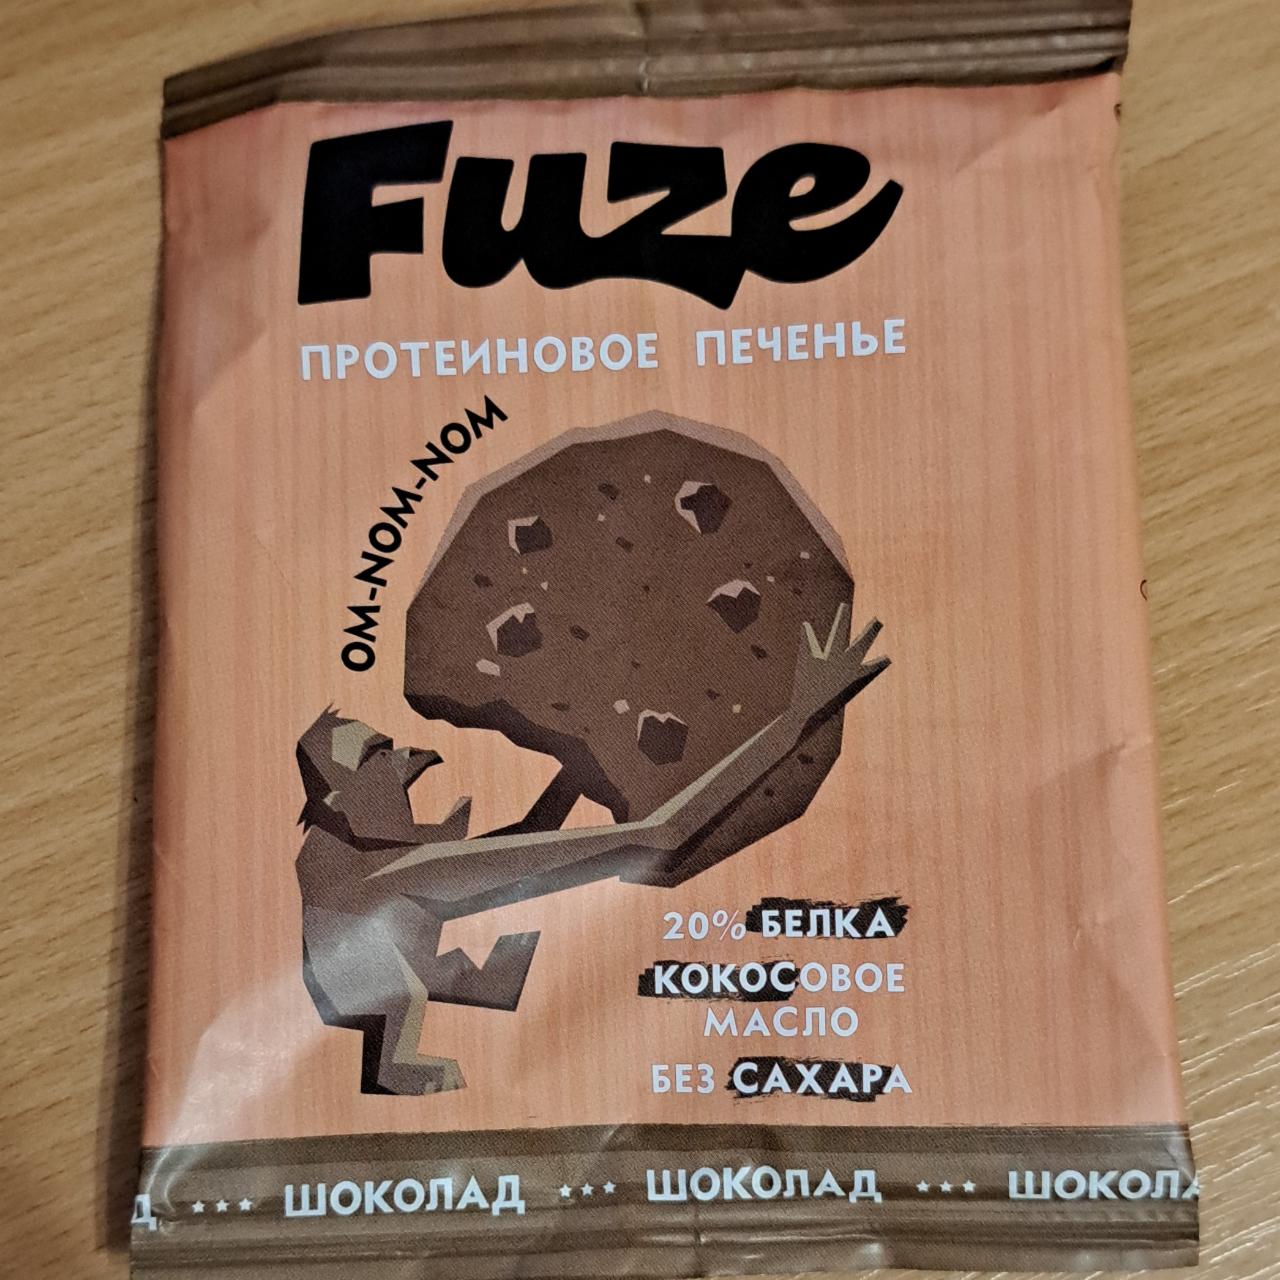 Фото - Протеиновое печенье шоколад Cookies Fuze